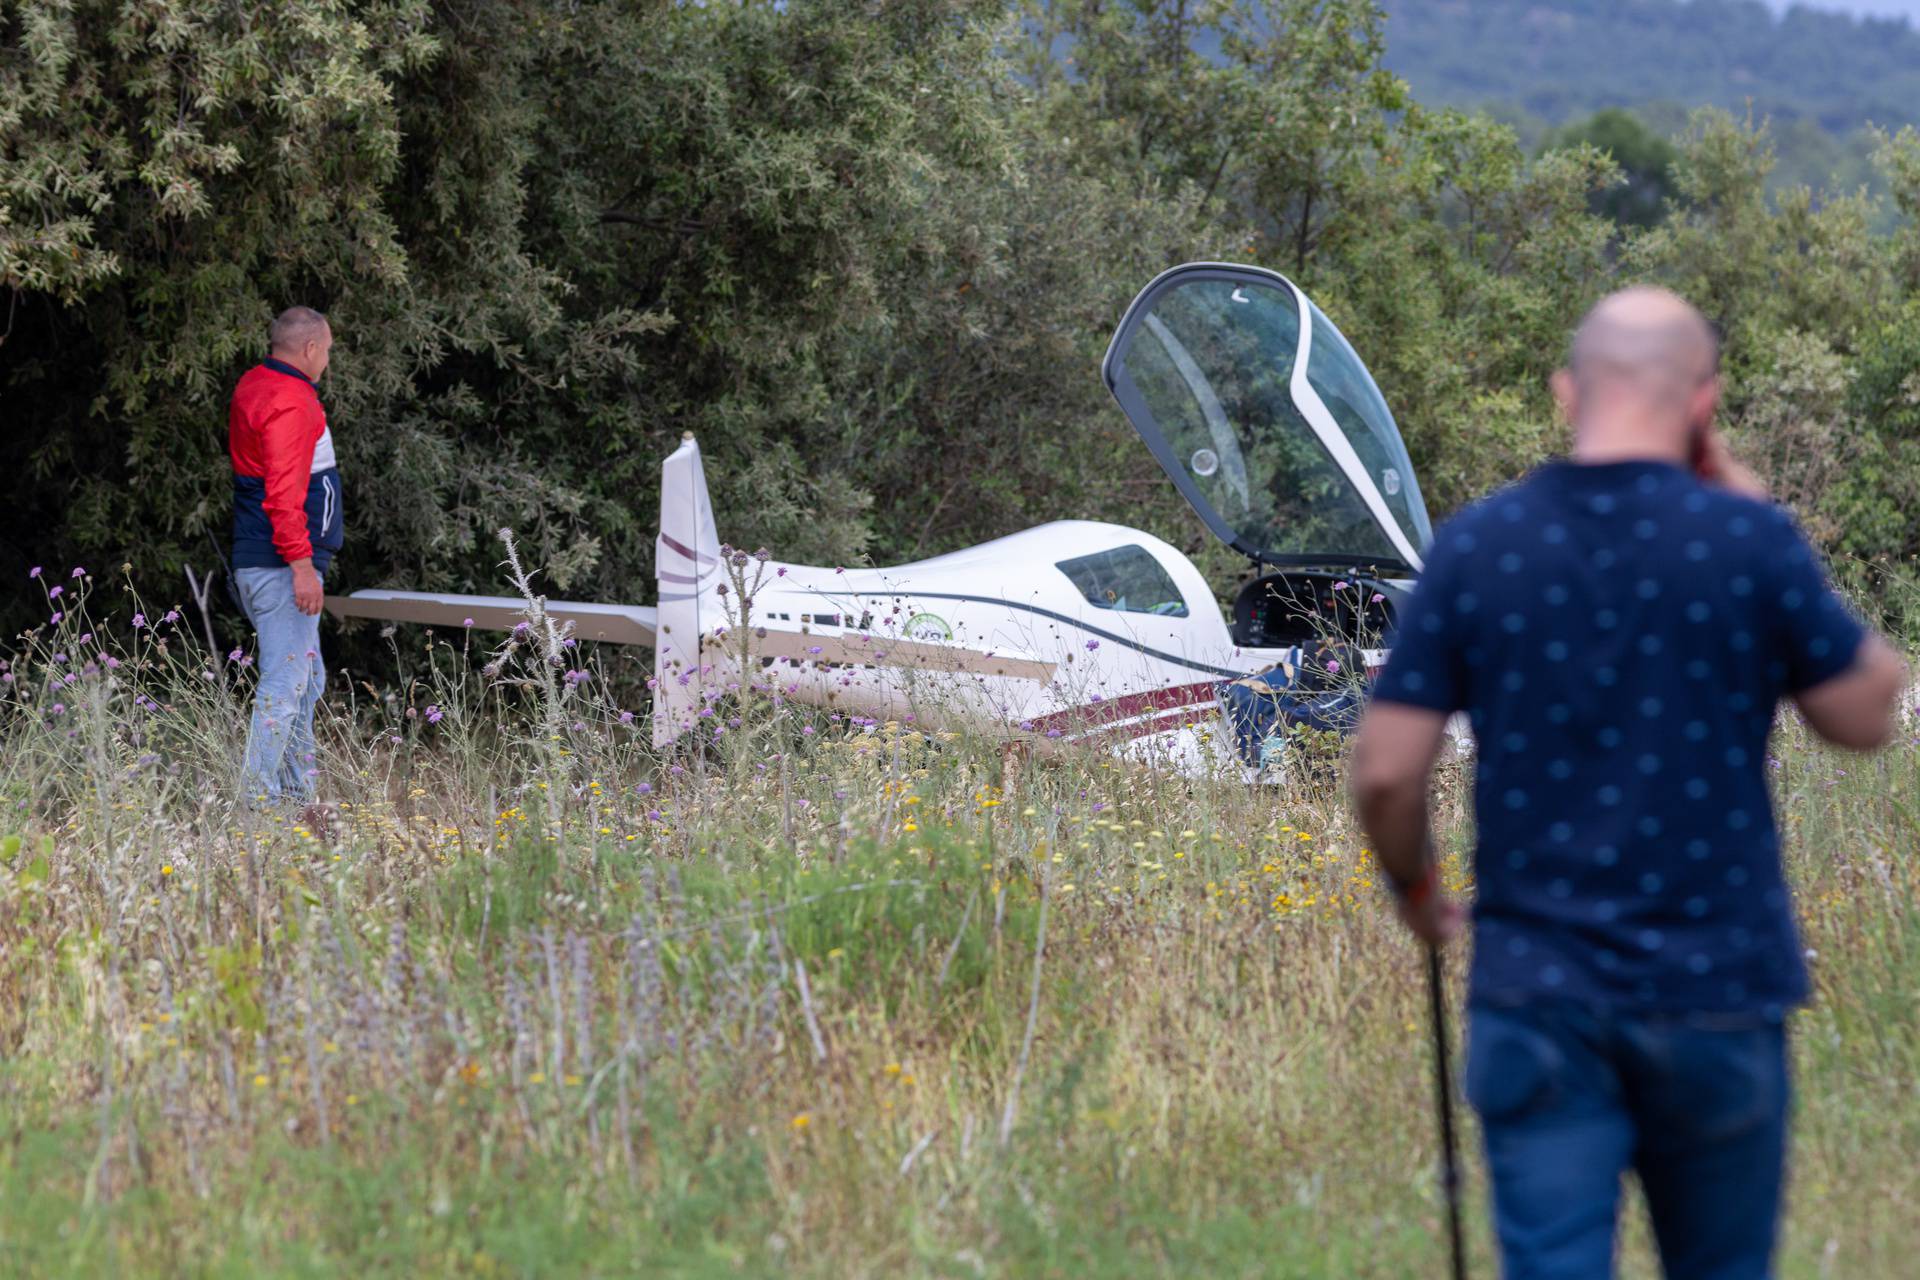 Hvar: Avion promašio pistu, ozlijeđene četiri osobe